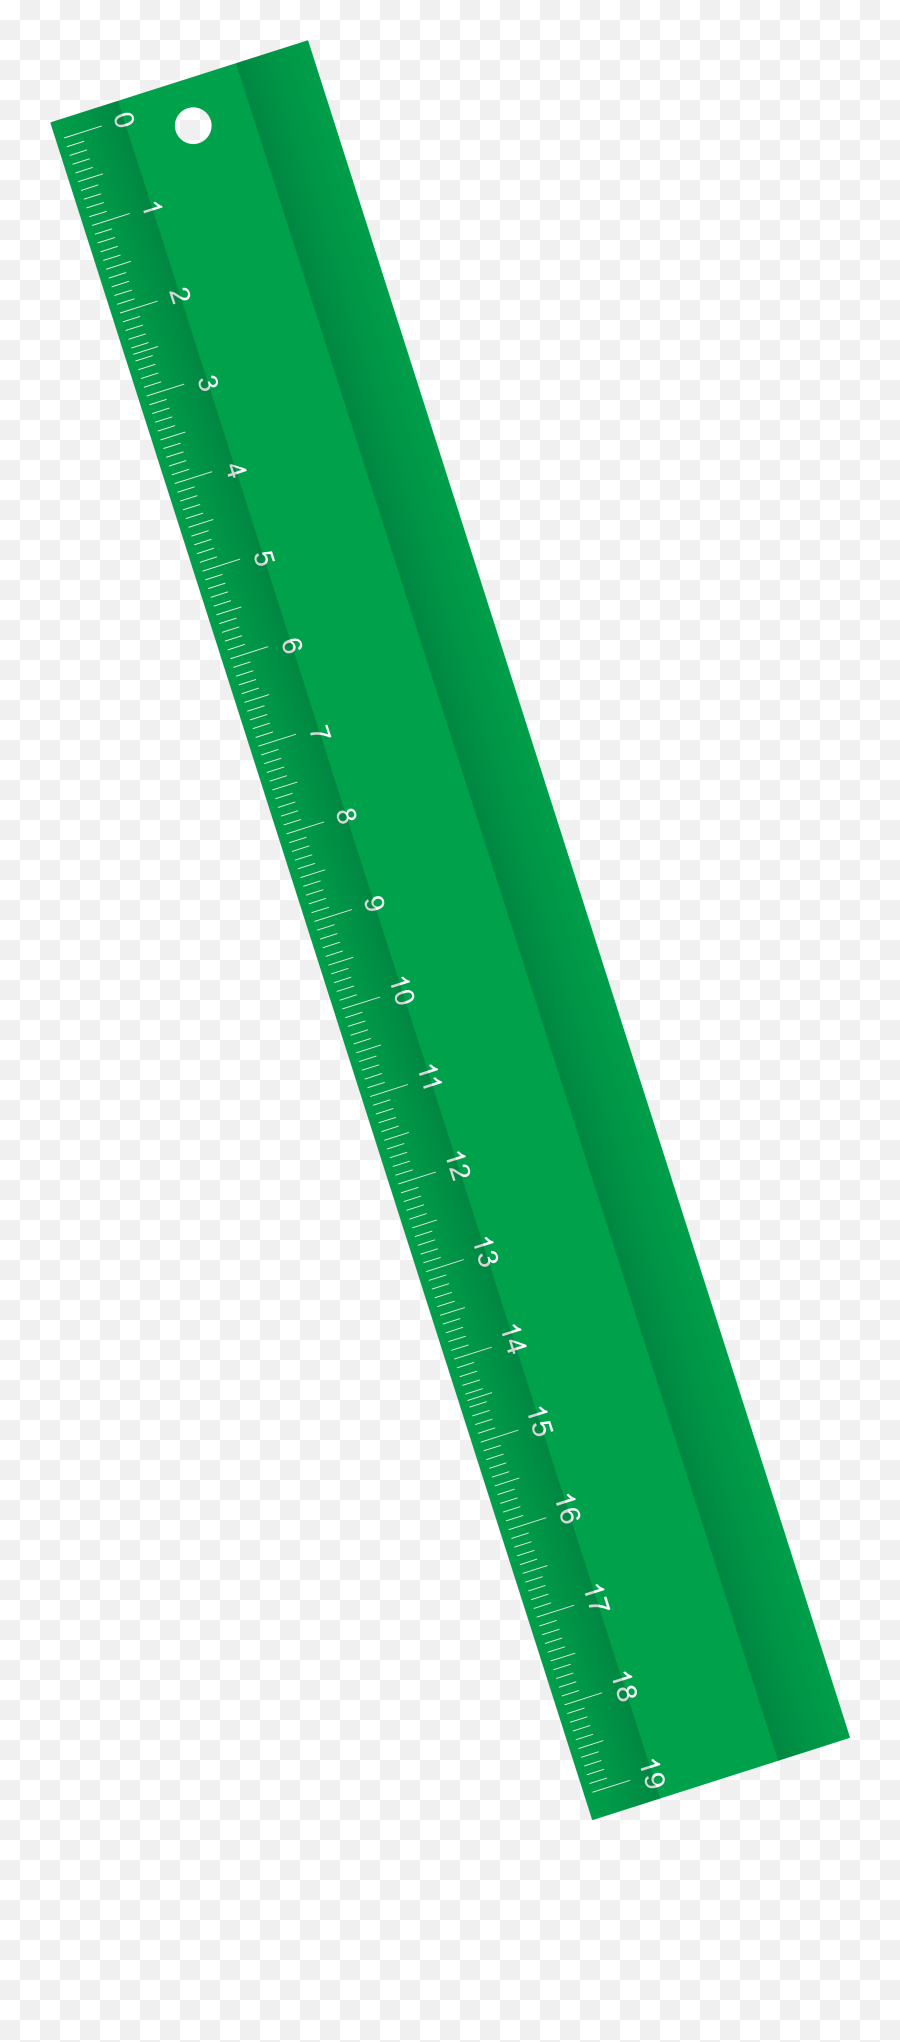 Green Ruler Transparent Background - Green Ruler Clipart Png,Ruler Transparent Background